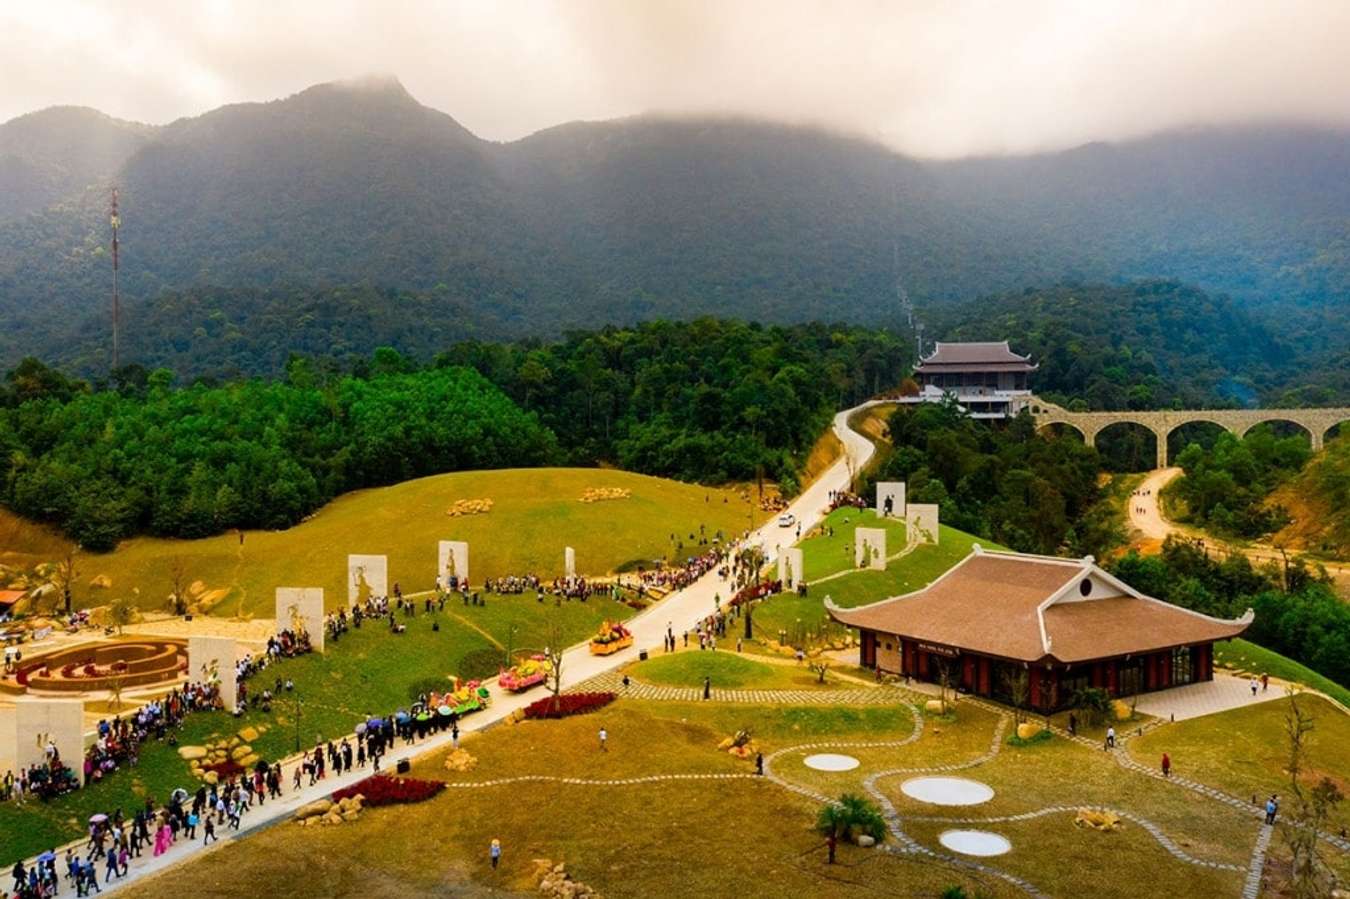 Bạn đã từng đến thăm cảnh đẹp Bắc Giang chưa?
